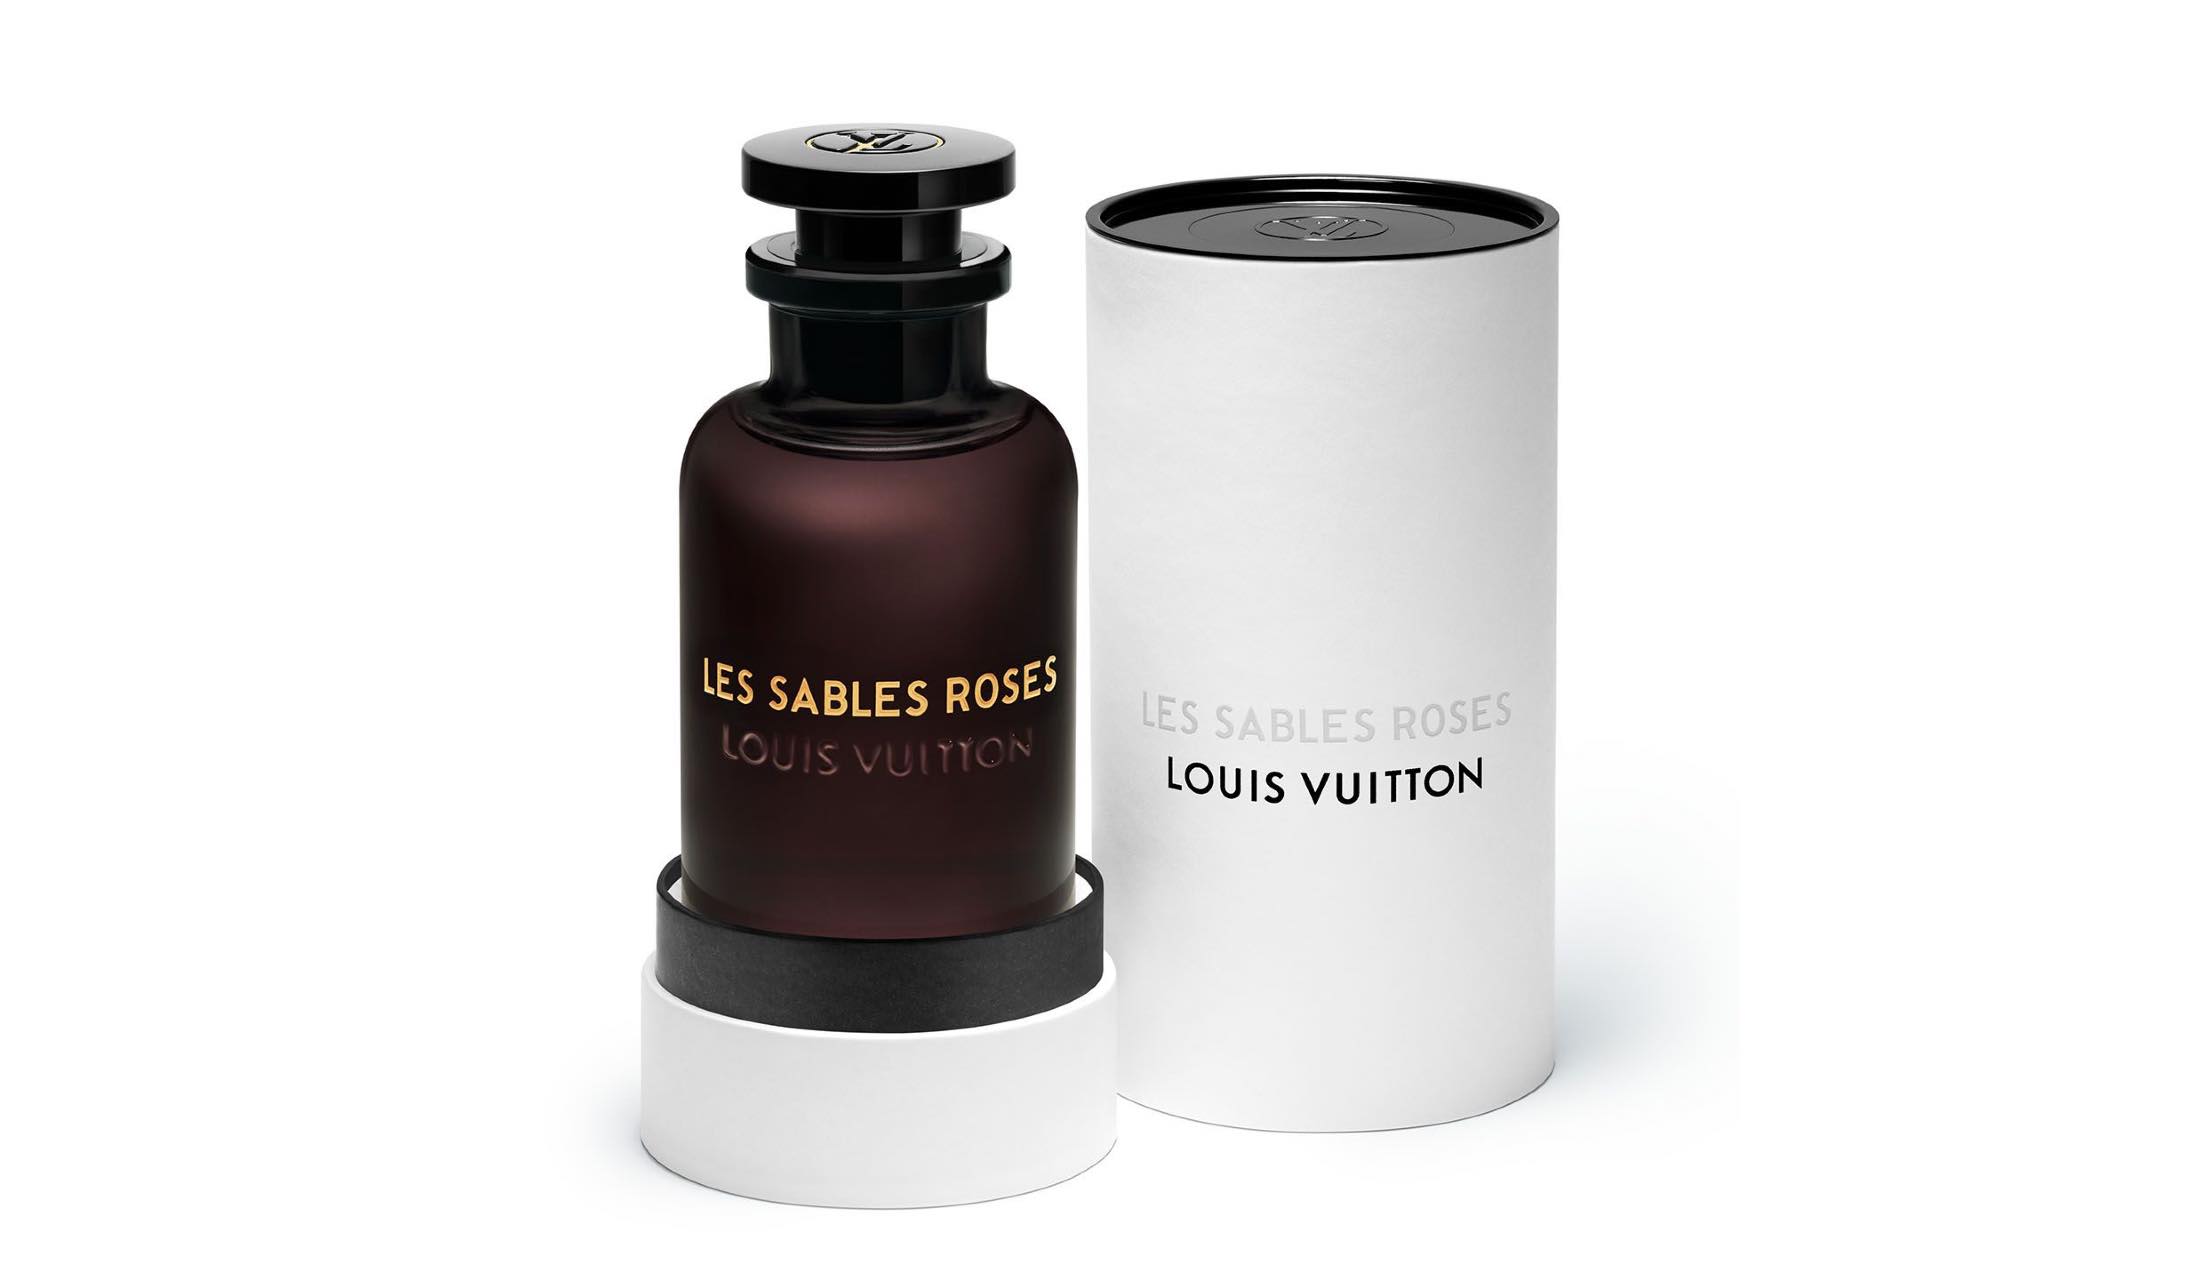 ルイ・ヴィトンの新しい香水「レ・サーブル・ローズ」は、重ねづけして自由に楽しめるのが魅力！ | Precious.jp（プレシャス）